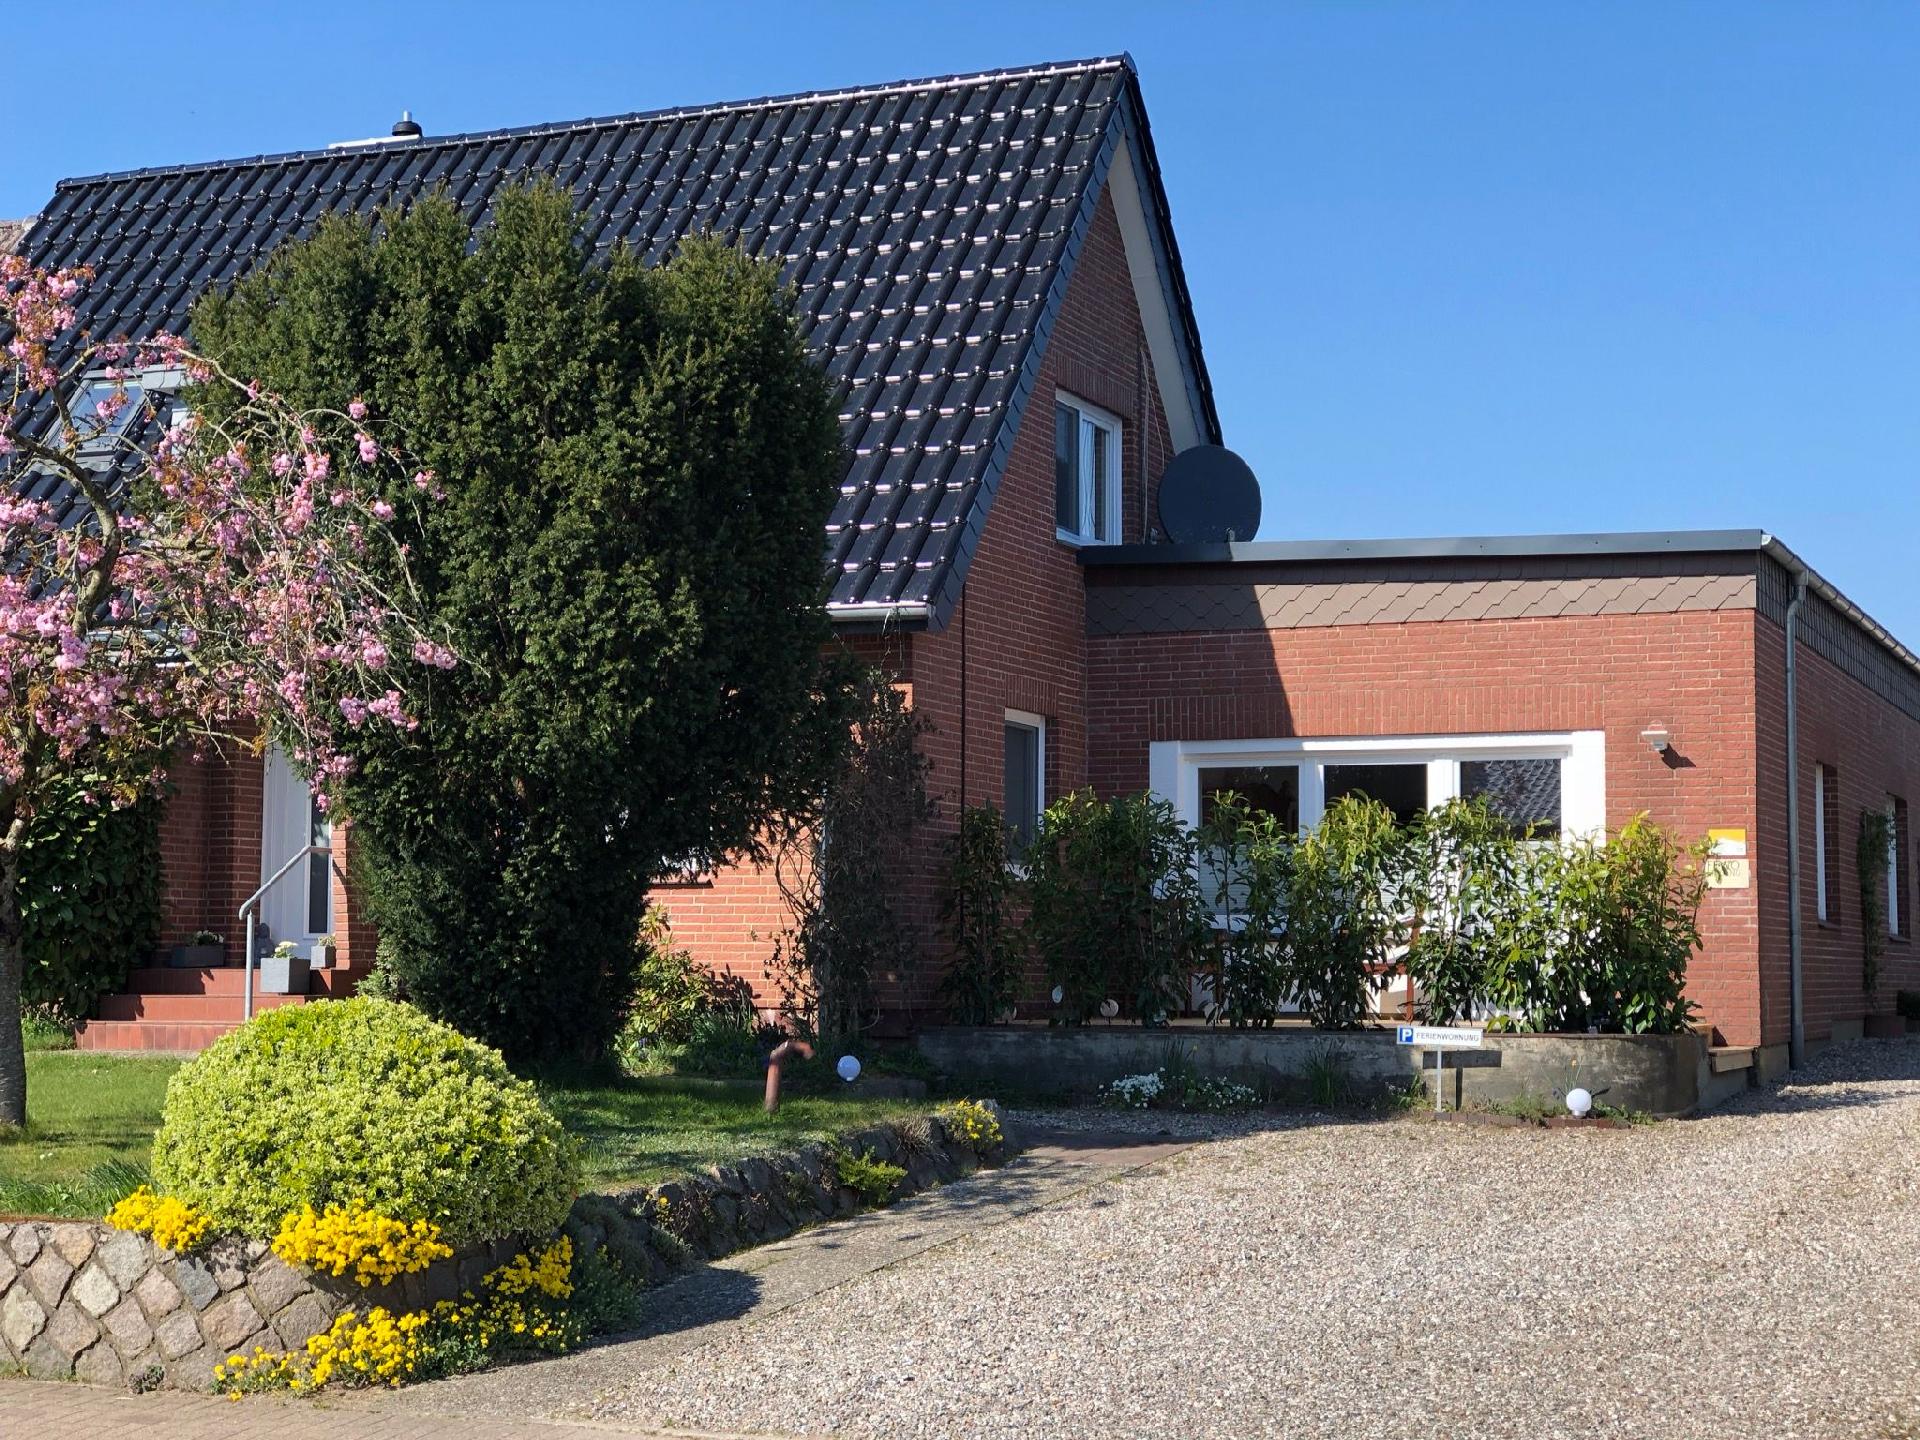 Gesamte Wohnung in Tolk mit Kleiner Terrasse Ferienhaus in Schleswig Holstein